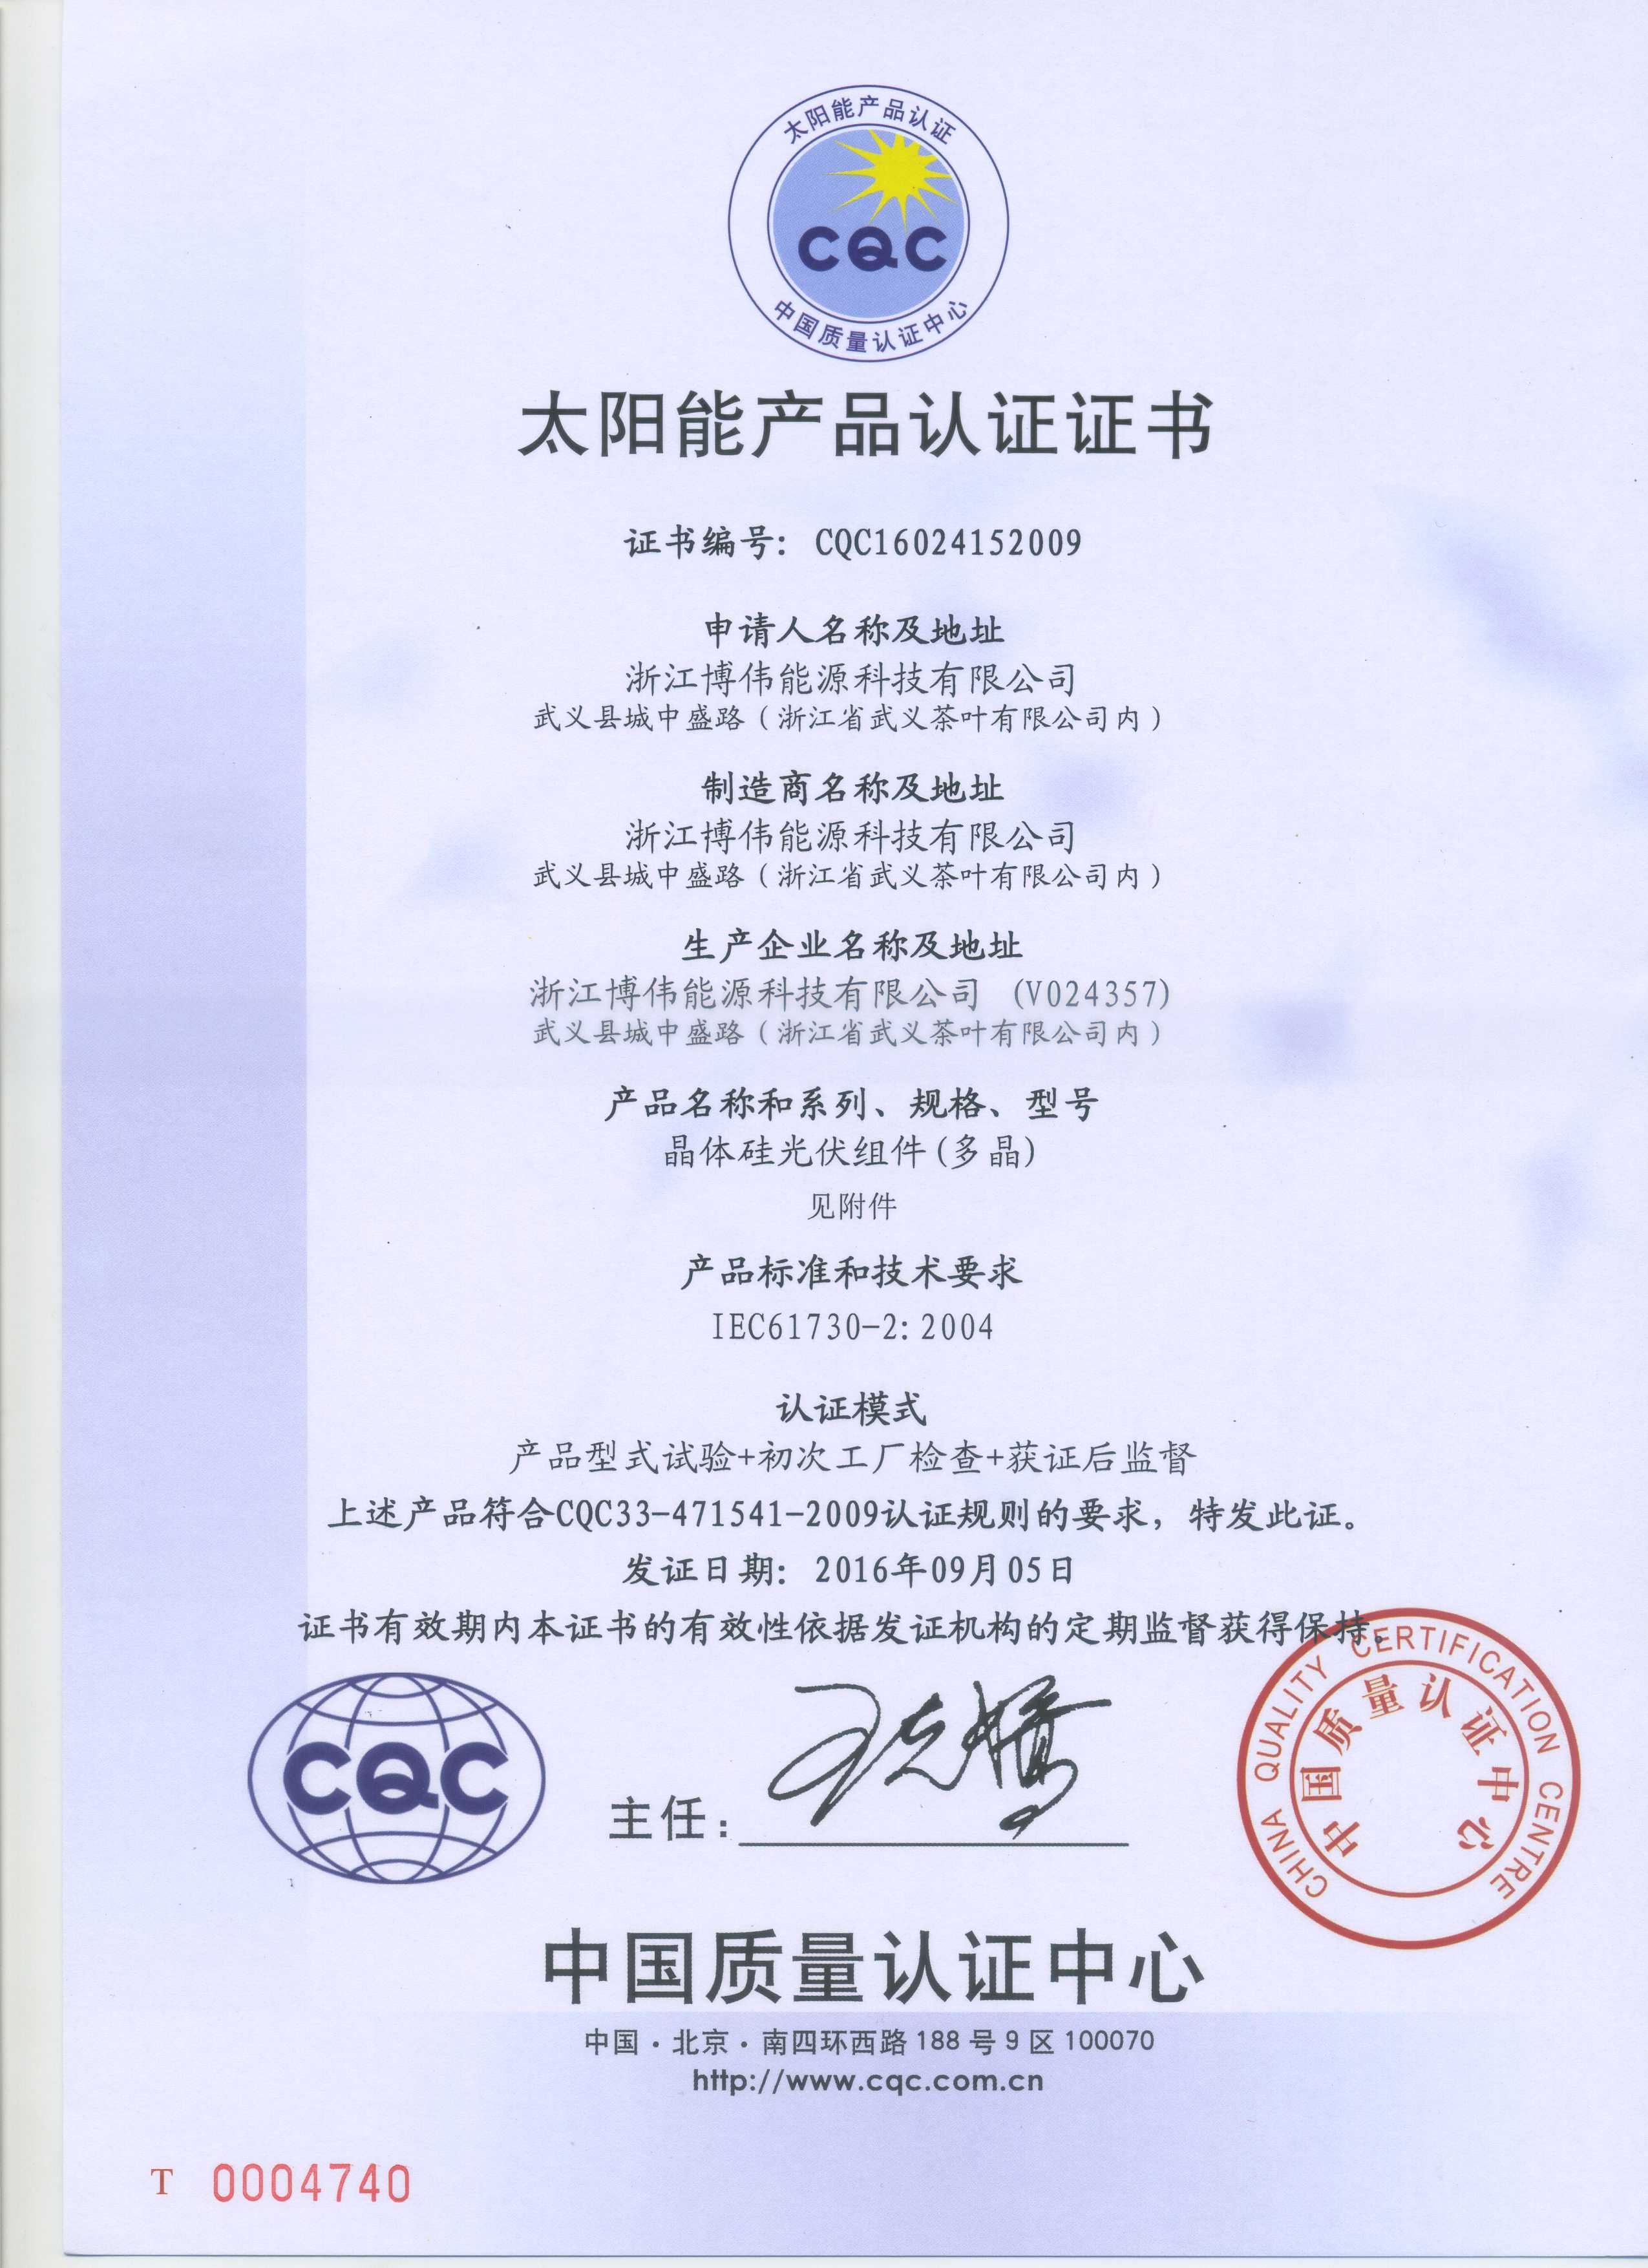 博伟首页 荣誉证书 cqc02 中国质量认证中心